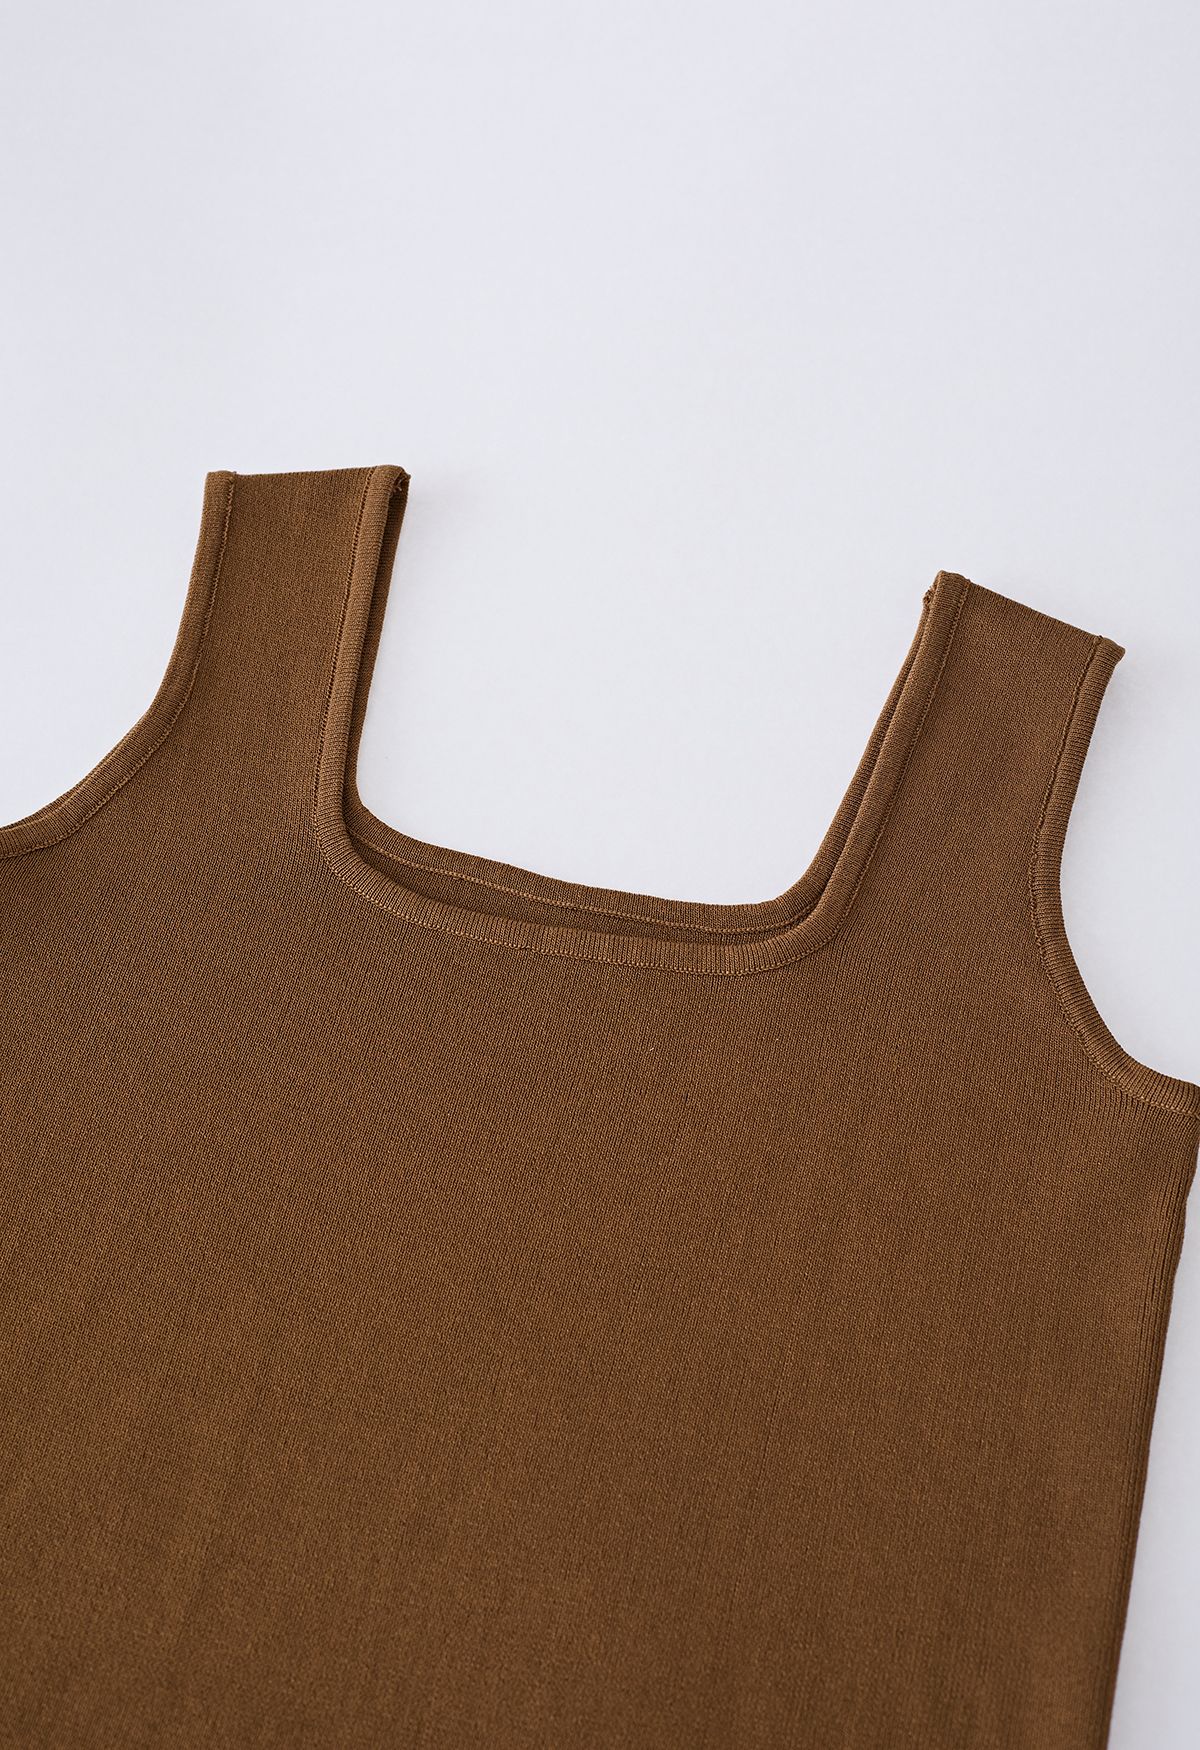 Camiseta sin mangas de punto con cuello cuadrado elegante en marrón